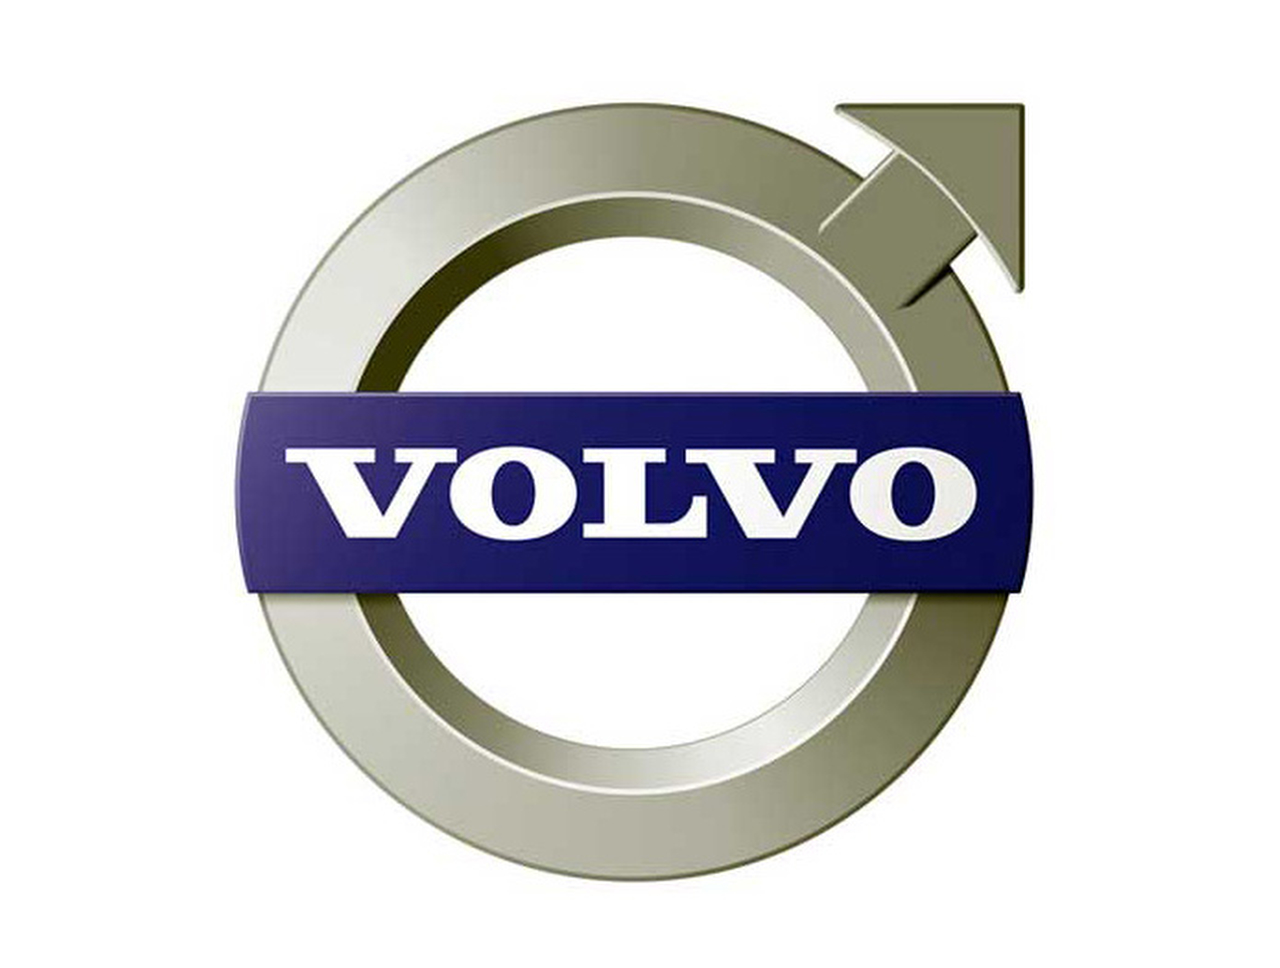 https://0201.nccdn.net/4_2/000/000/01e/20c/volvo-logo1.jpg